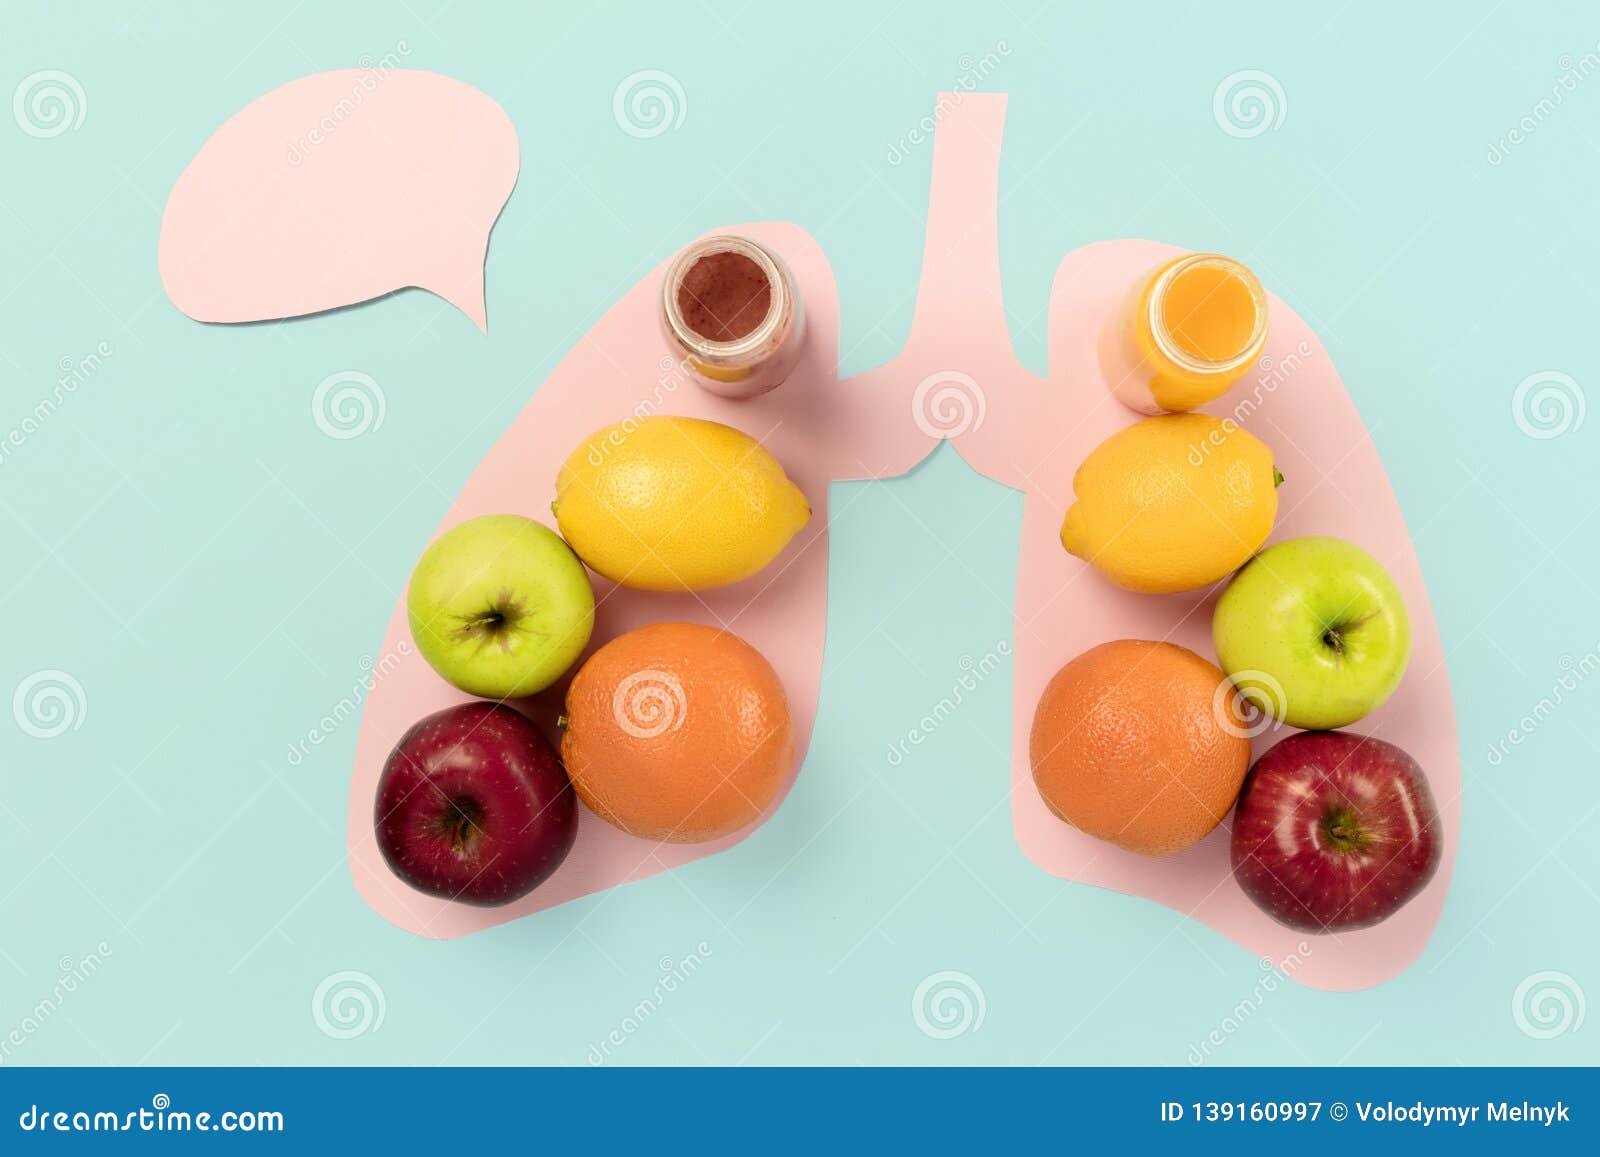 aliment detoxifiant poumon